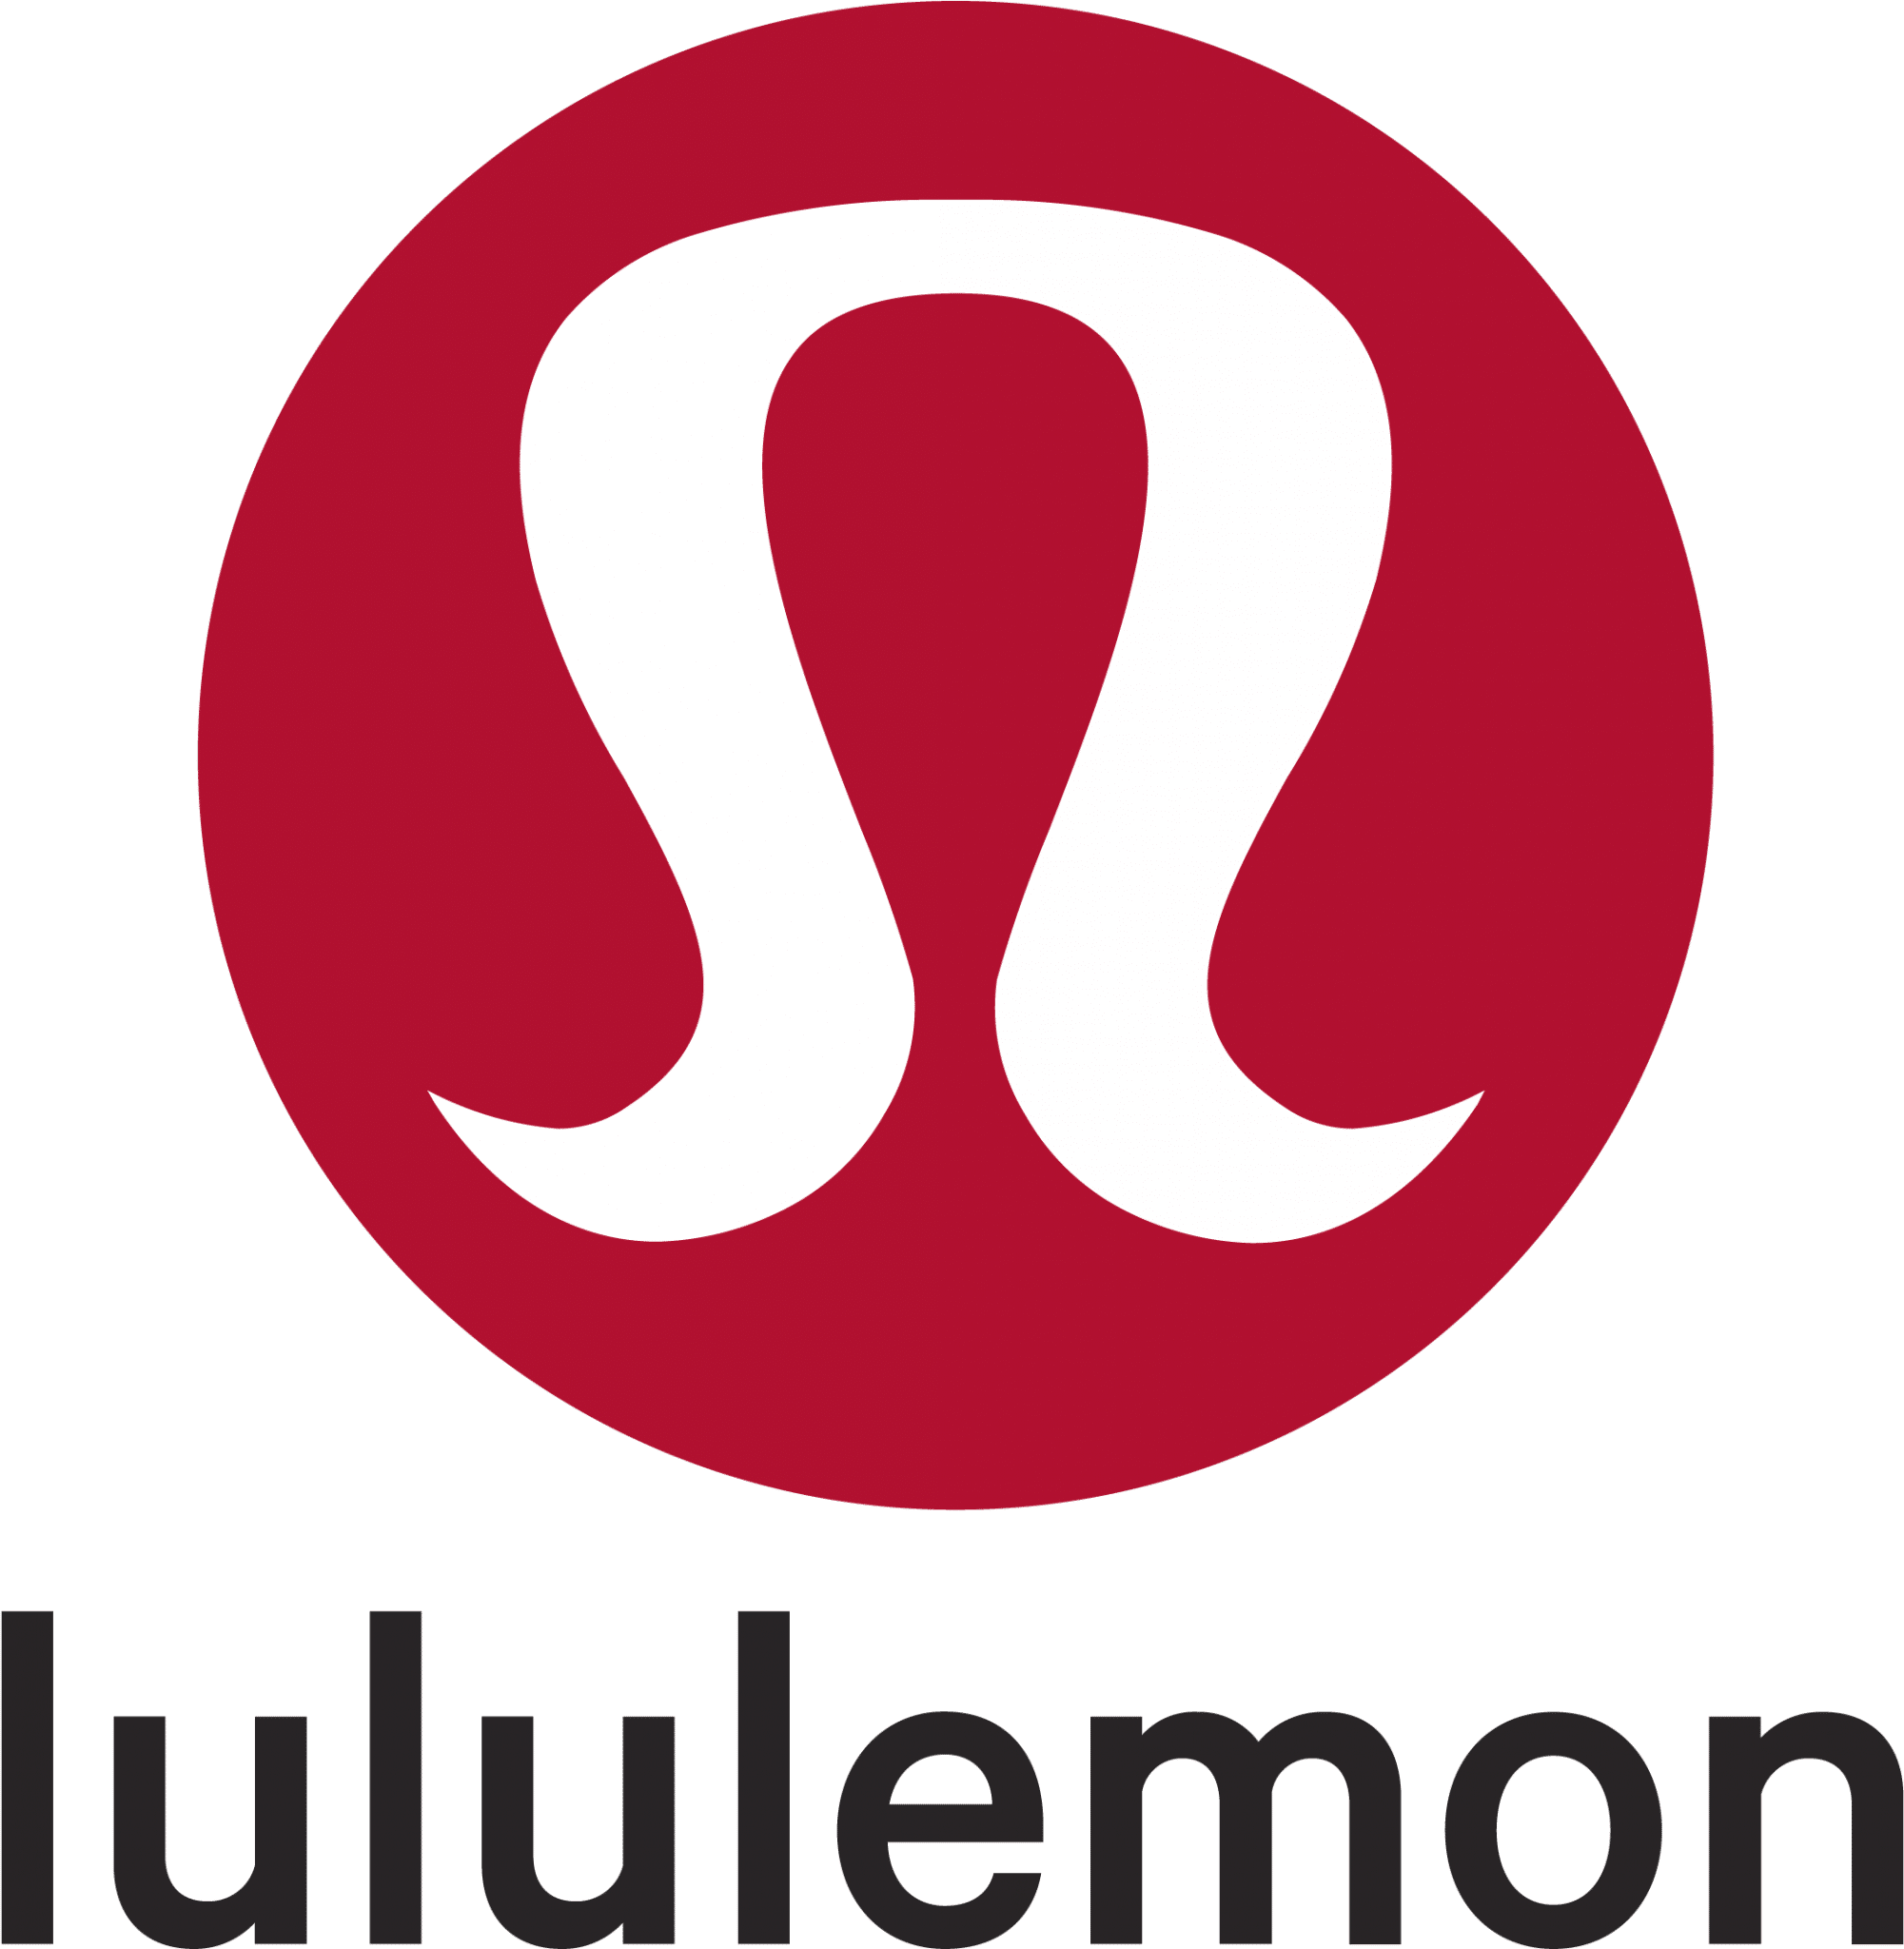 512 5127106 Lululemon Emblema Lululemon Logo Black Background 2001x2048 